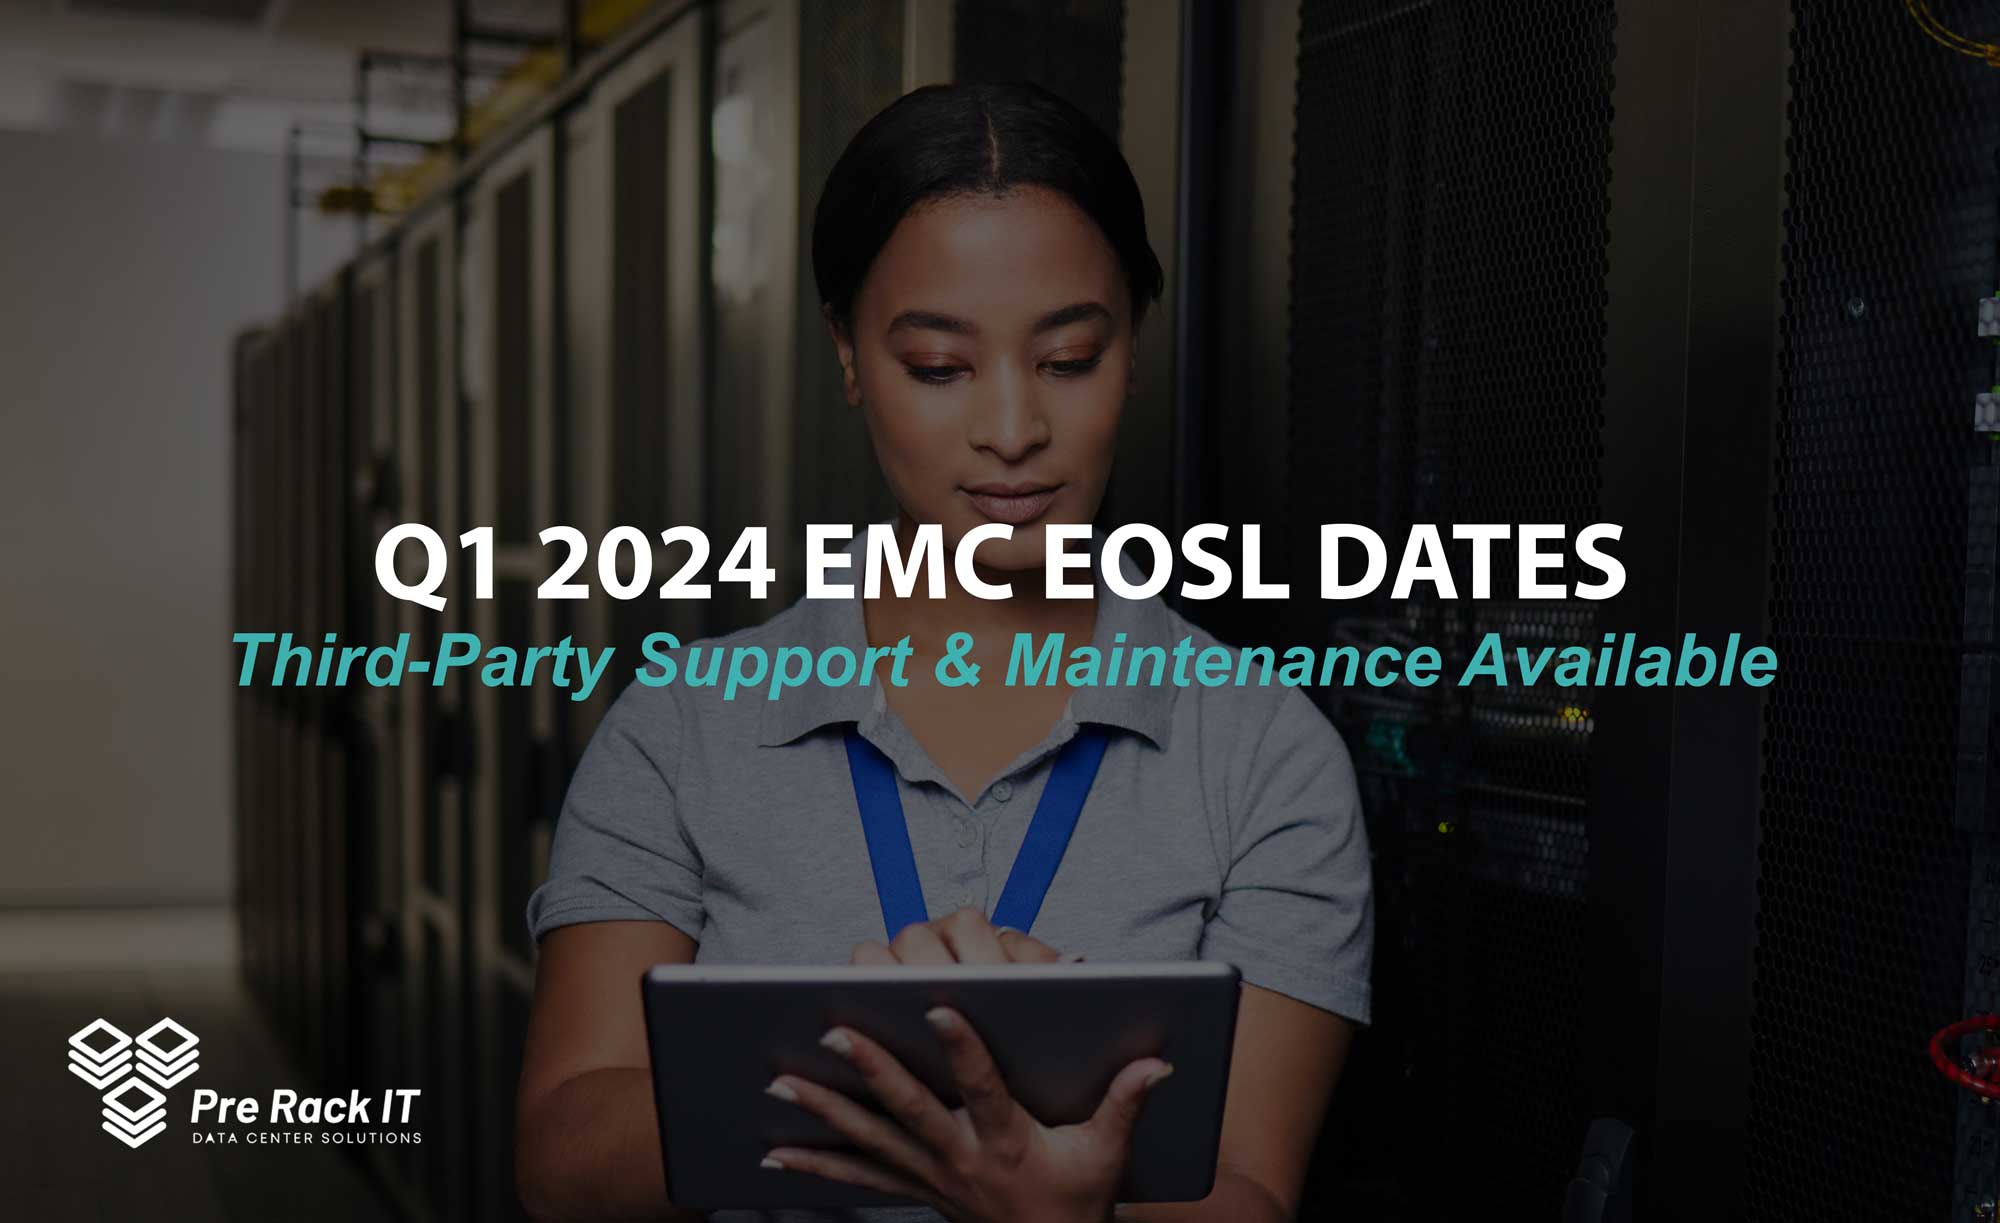 EMC EOSL Alert - Q1 2024